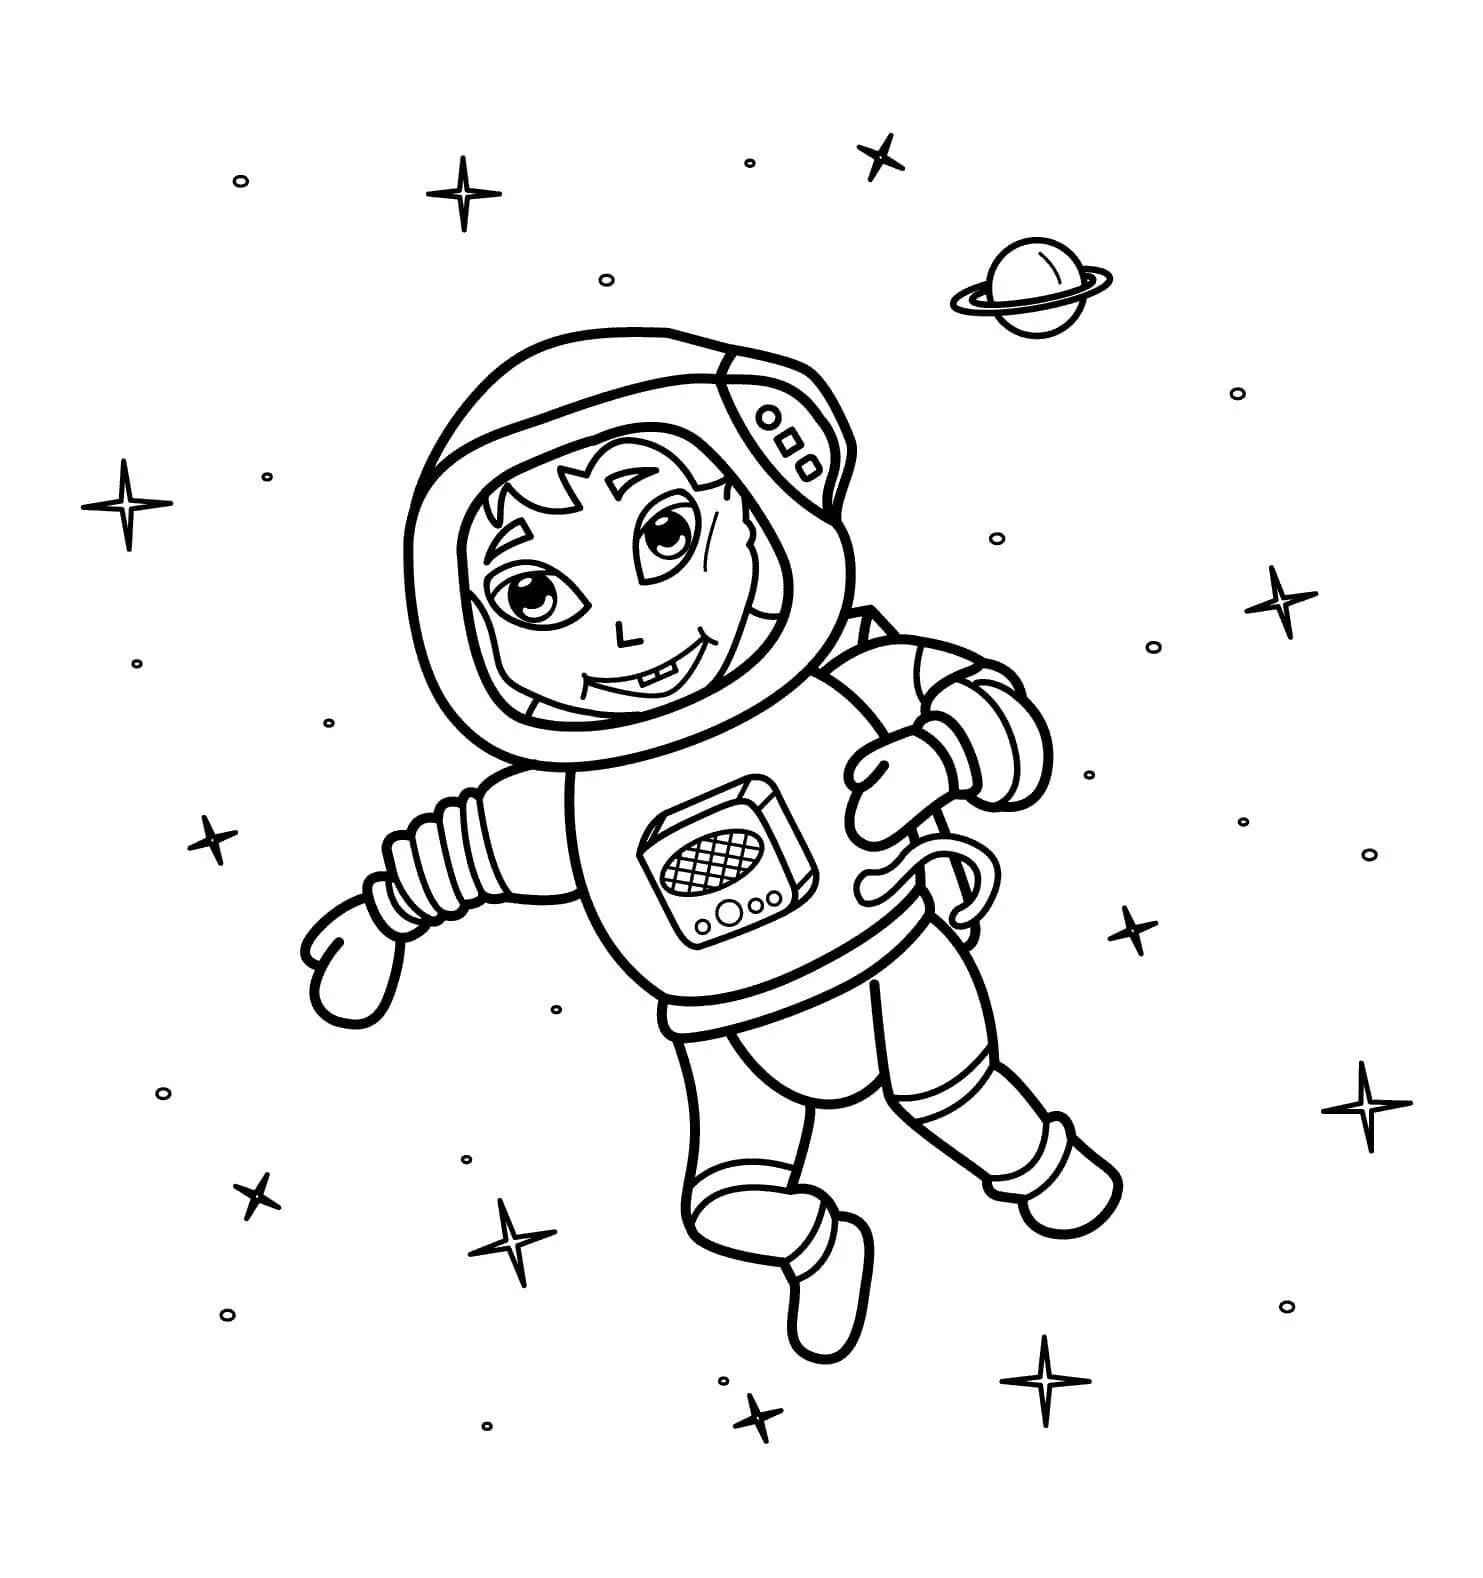 Космонавт раскраска для детей. Космос раскраска для детей. Раскраска про космос и Космонавтов для детей. Космонавт для раскрашивания для детей. Раскраски к дню космонавтики для детей распечатать